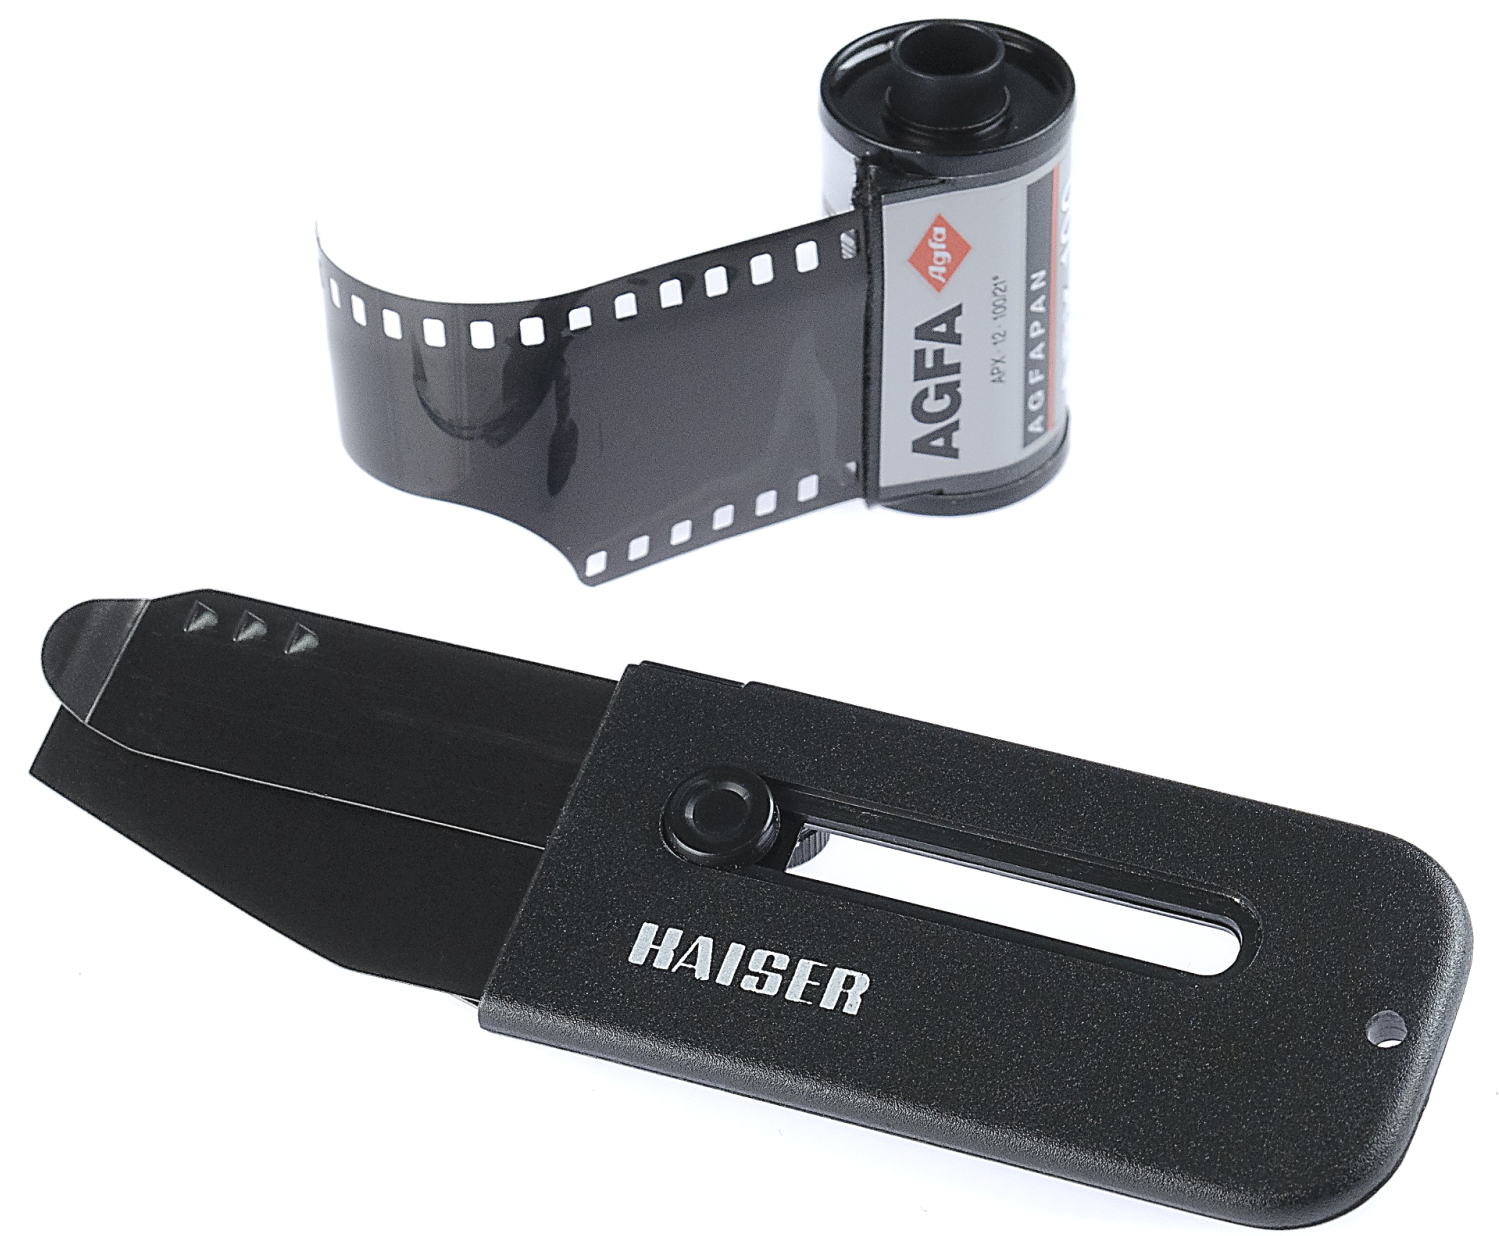 Kaiser 35mm Film retriever